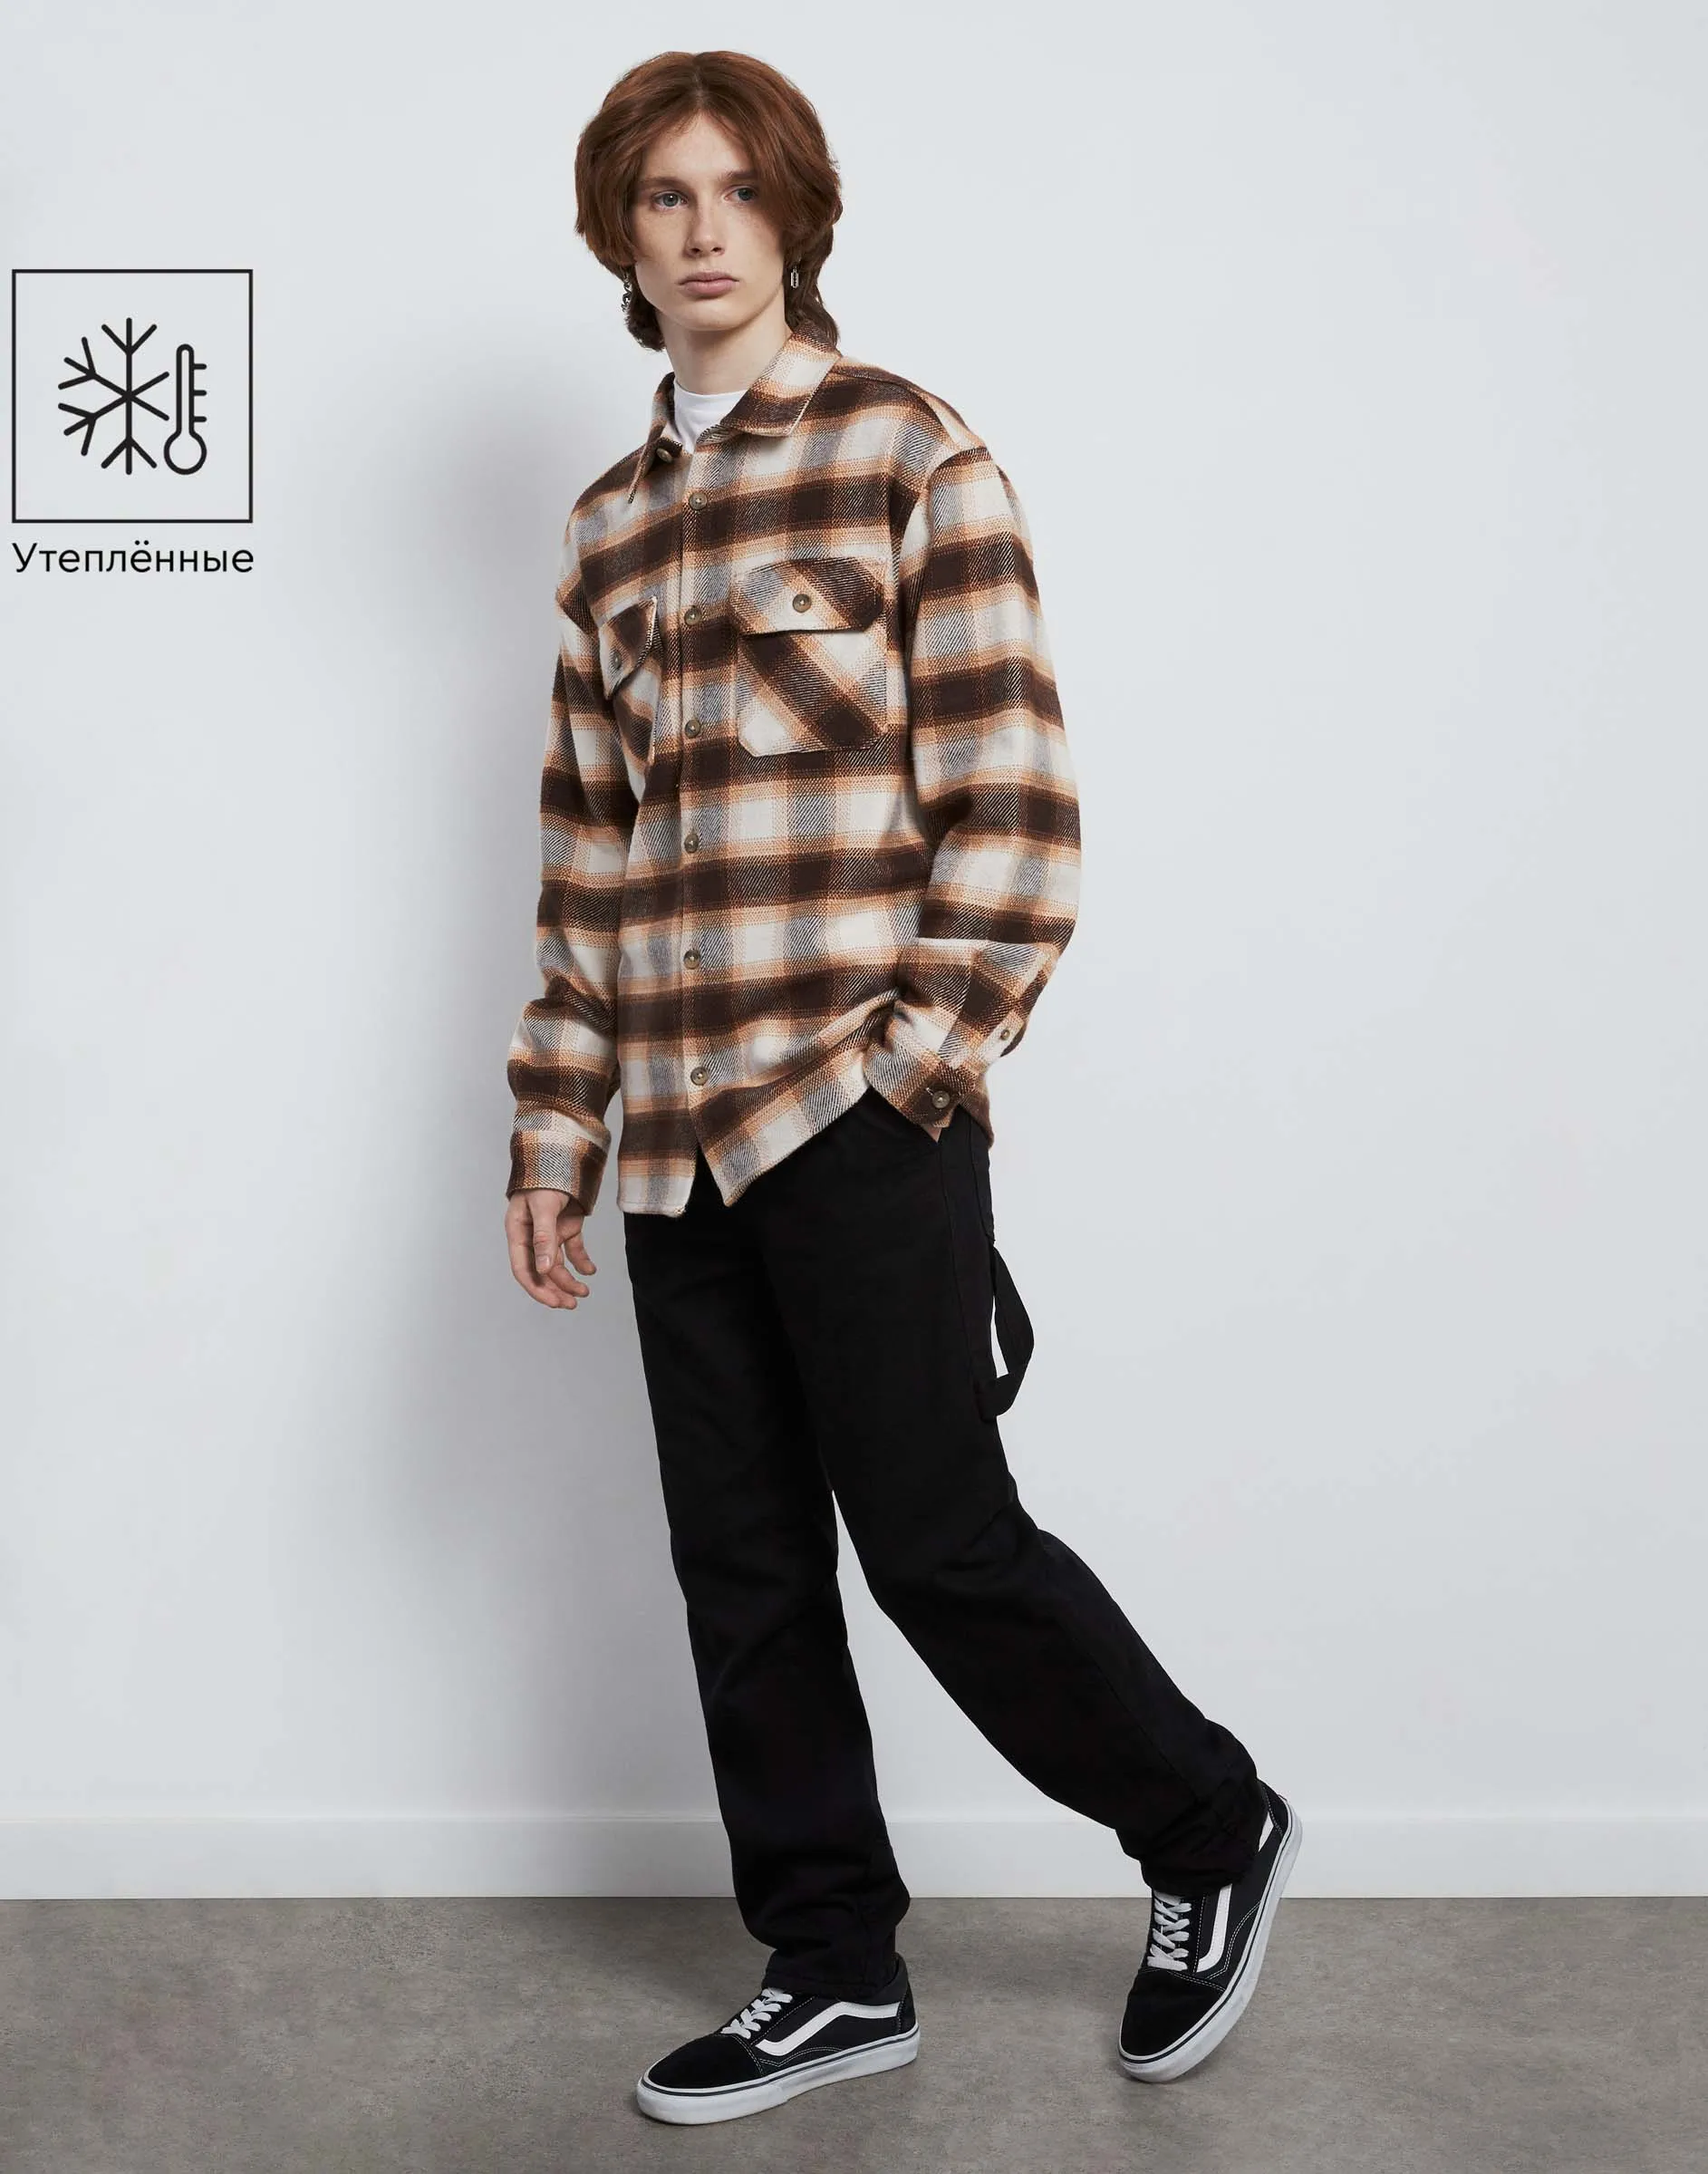 Утеплённые брюки для мальчиков-подростков – купить недорого и узнать цены вкаталоге интернет-магазина Gloria Jeans.